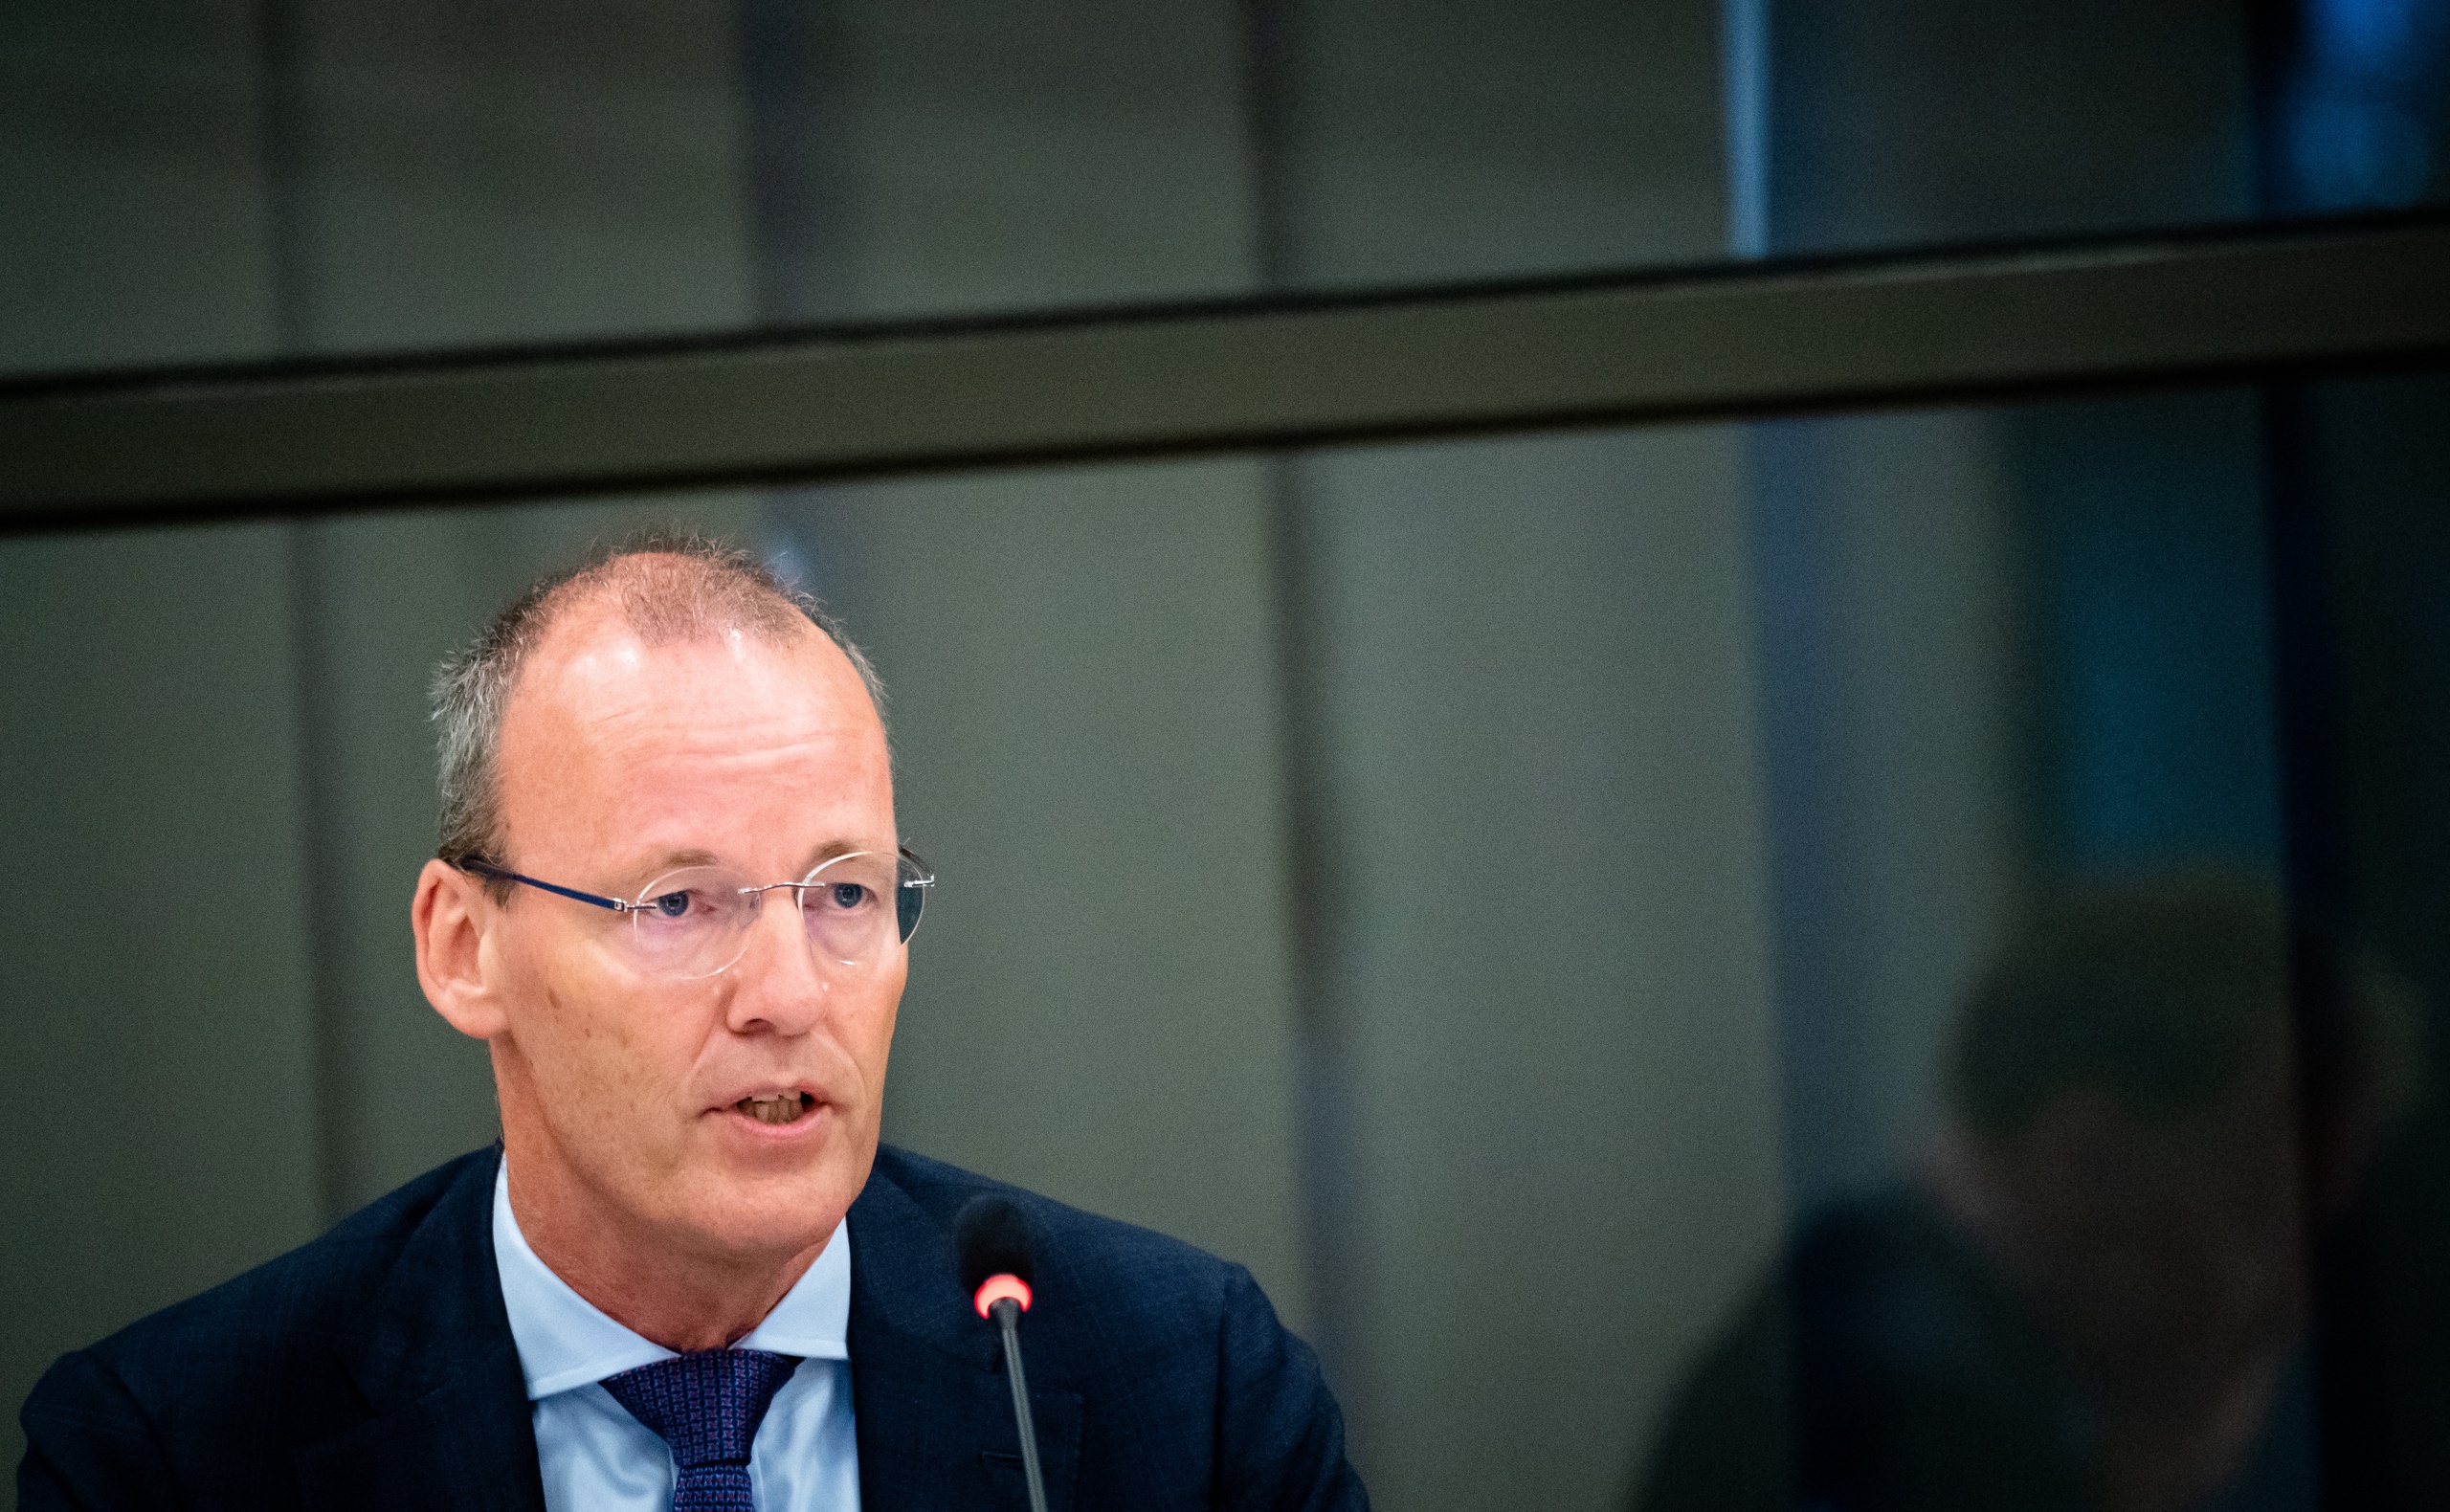 Het zou onverstandig zijn van het kabinet om alle huishoudens ook volgend jaar een korting te geven van 190 euro op de energierekening, zegt DNB-president Klaas Knot.